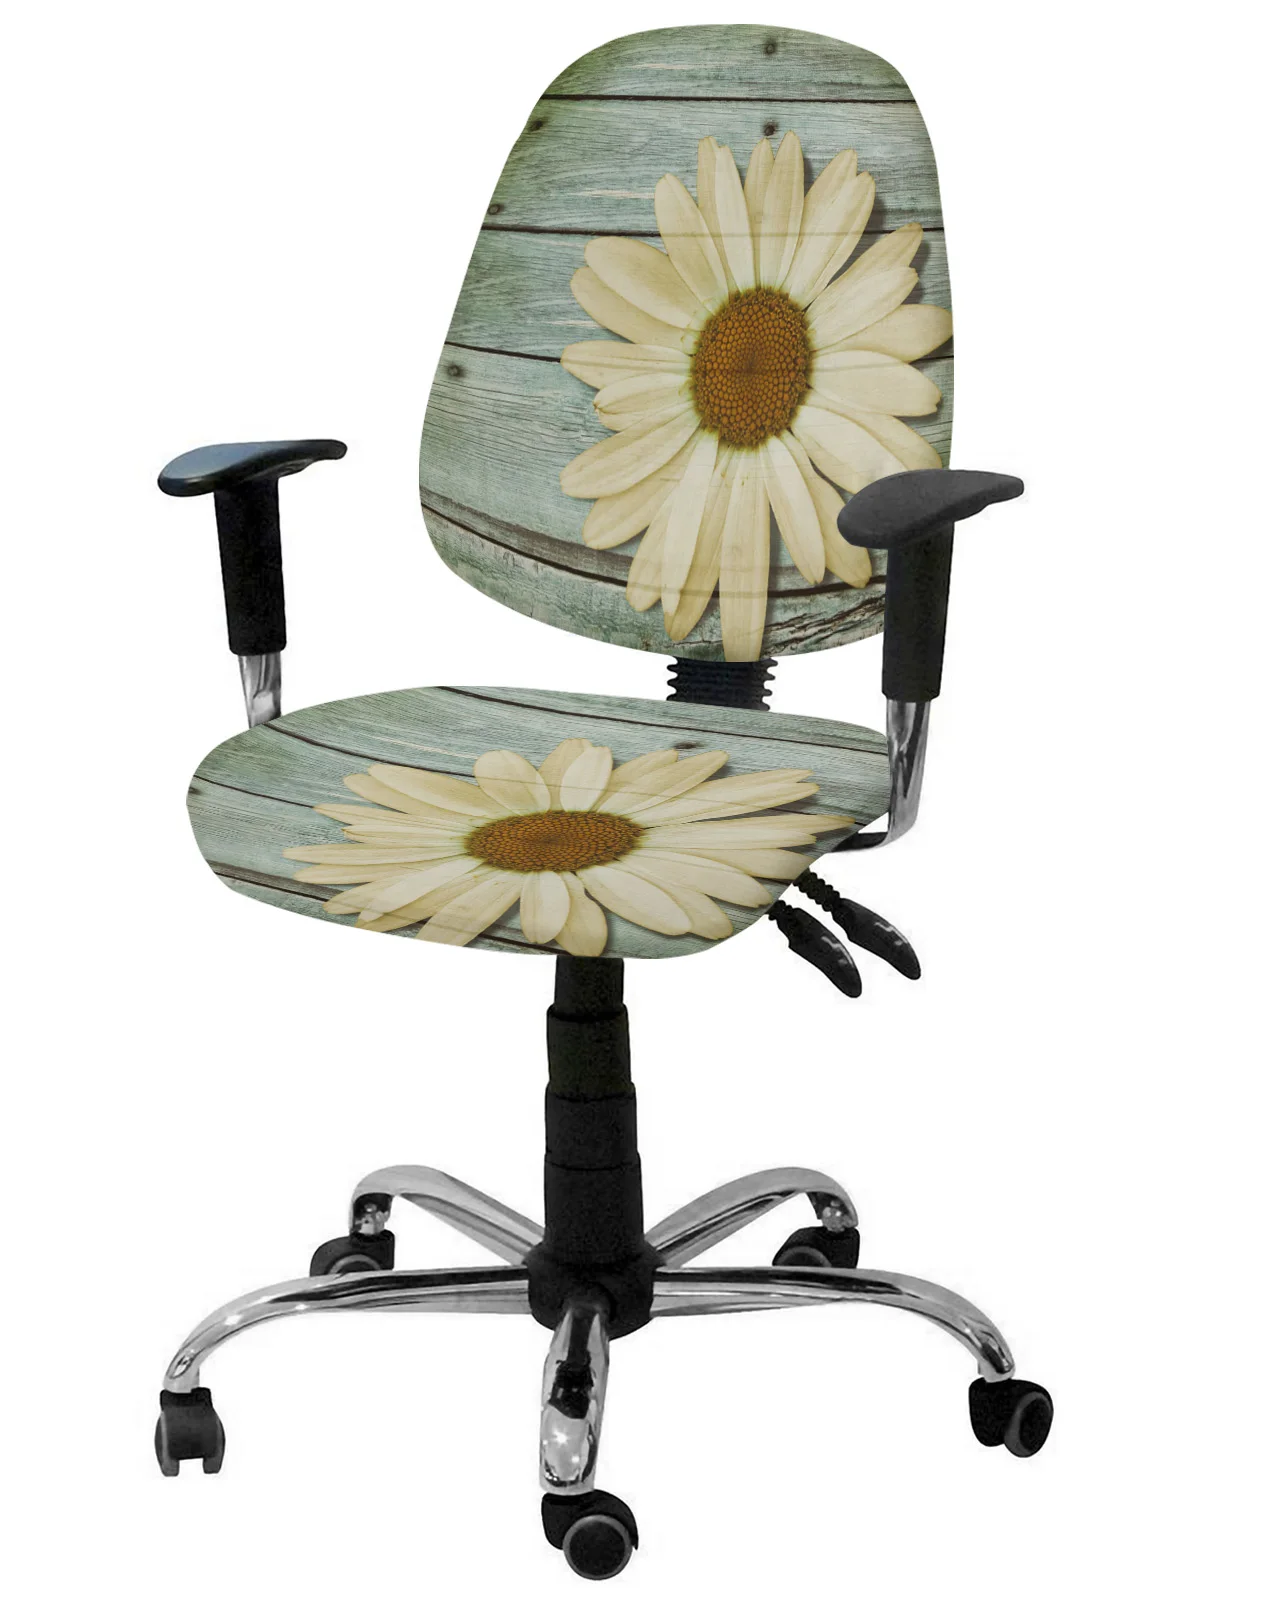 Эластичный чехол для компьютерного кресла Vintage Wood Grain Daisy, эластичный чехол для офисного кресла, съемный чехол для офисного кресла, Разрезные чехлы для сидений 0